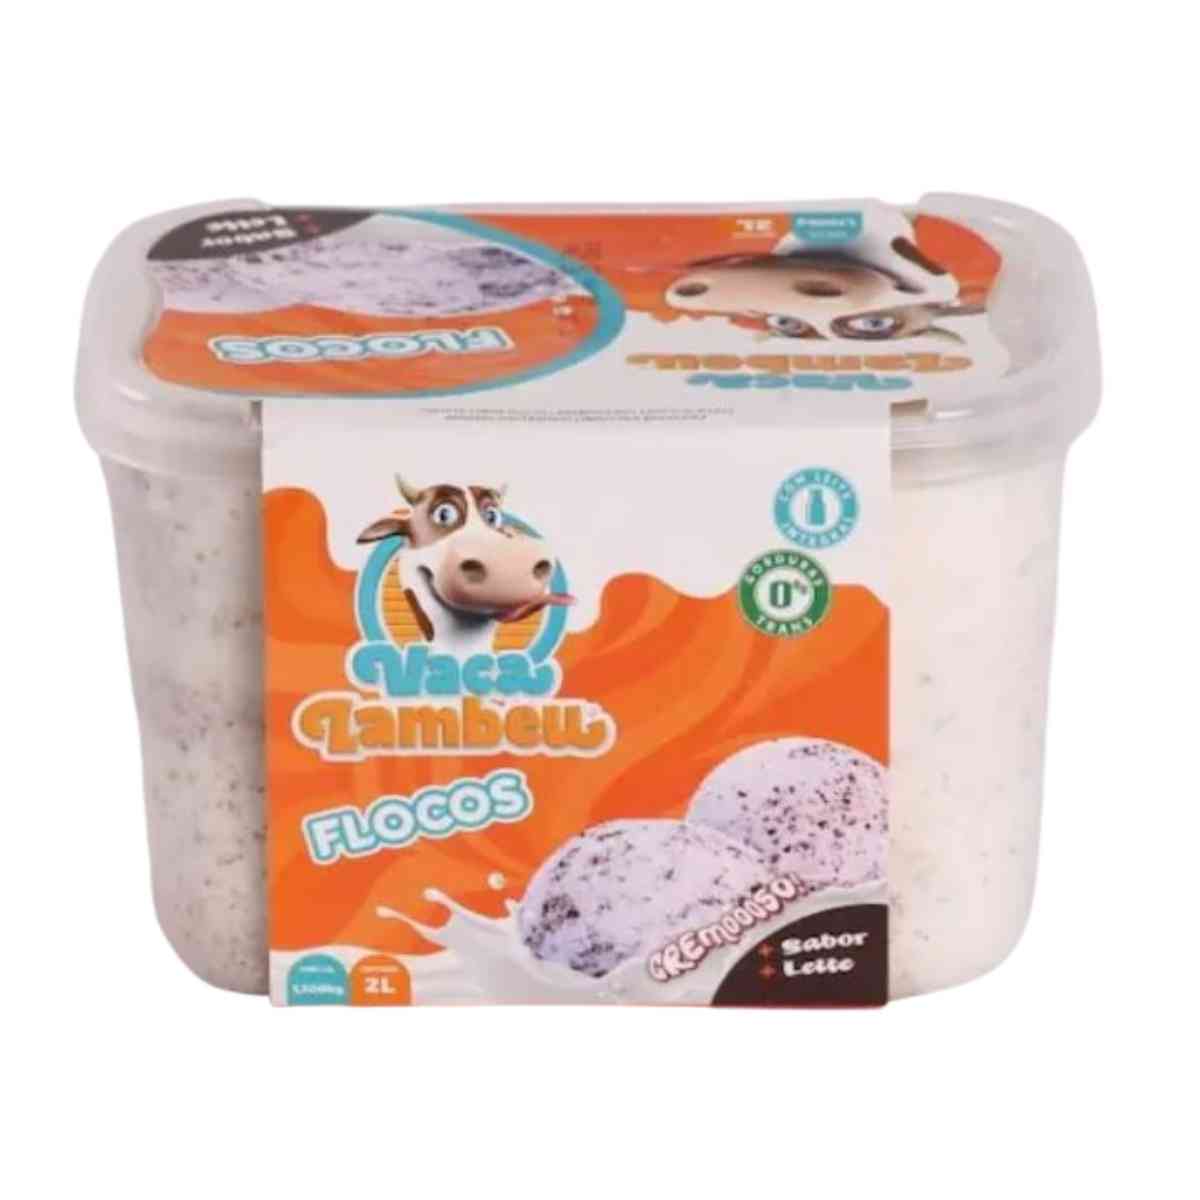 sorvete-vaca-lambeu-flocos-2l-1.jpg